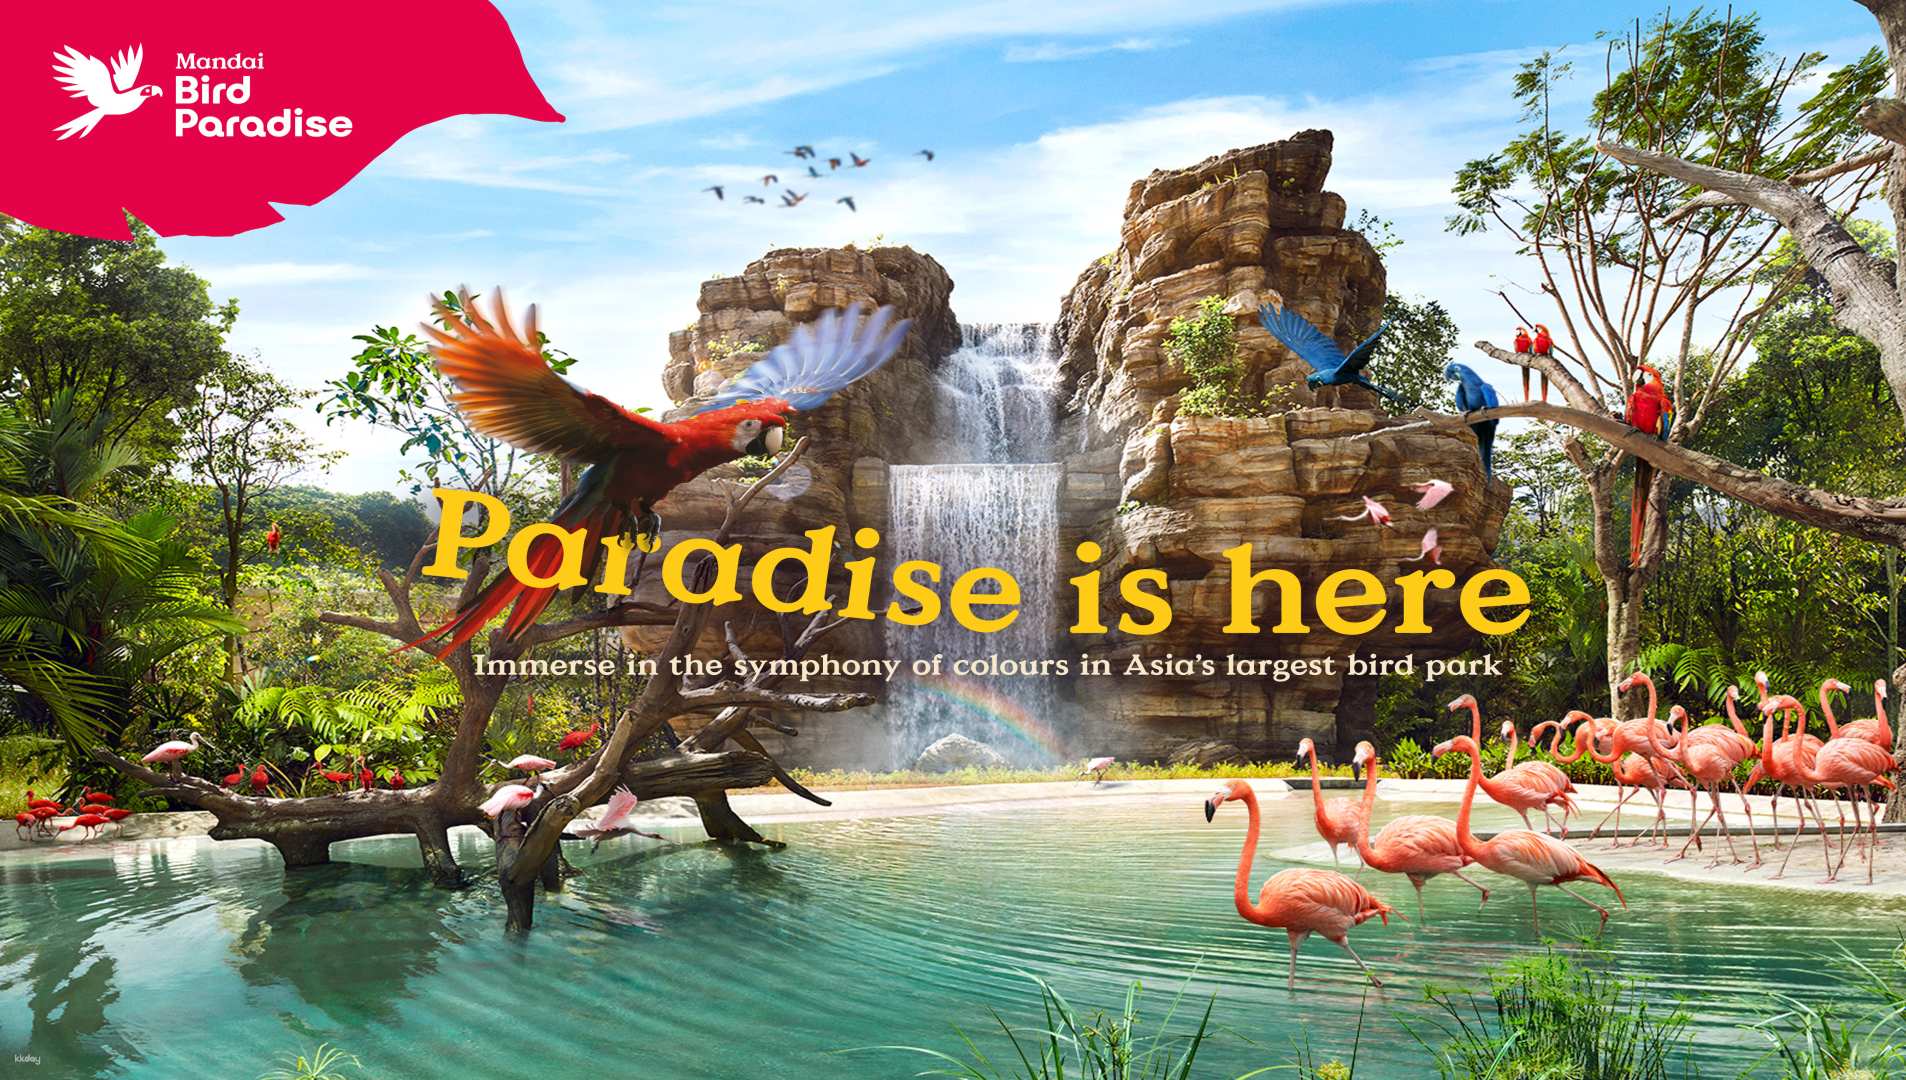 新加坡-萬態保育公園飛禽世界 (Bird Paradise)| 亞洲最大的鳥類樂園| 限時優惠中